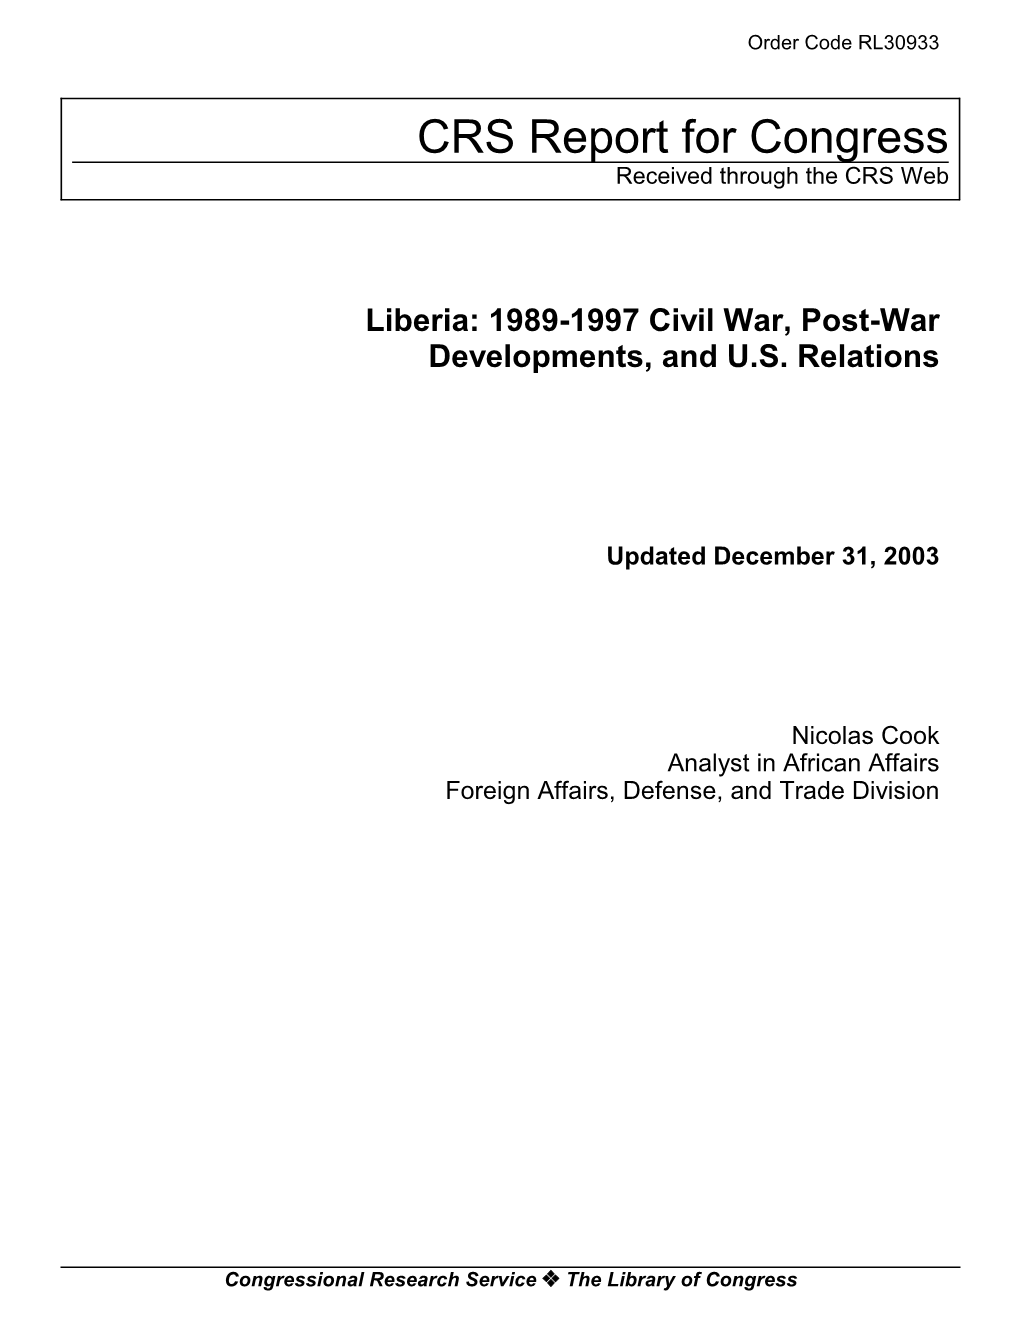 Liberia: 1989-1997 Civil War, Post-War Developments, and U.S